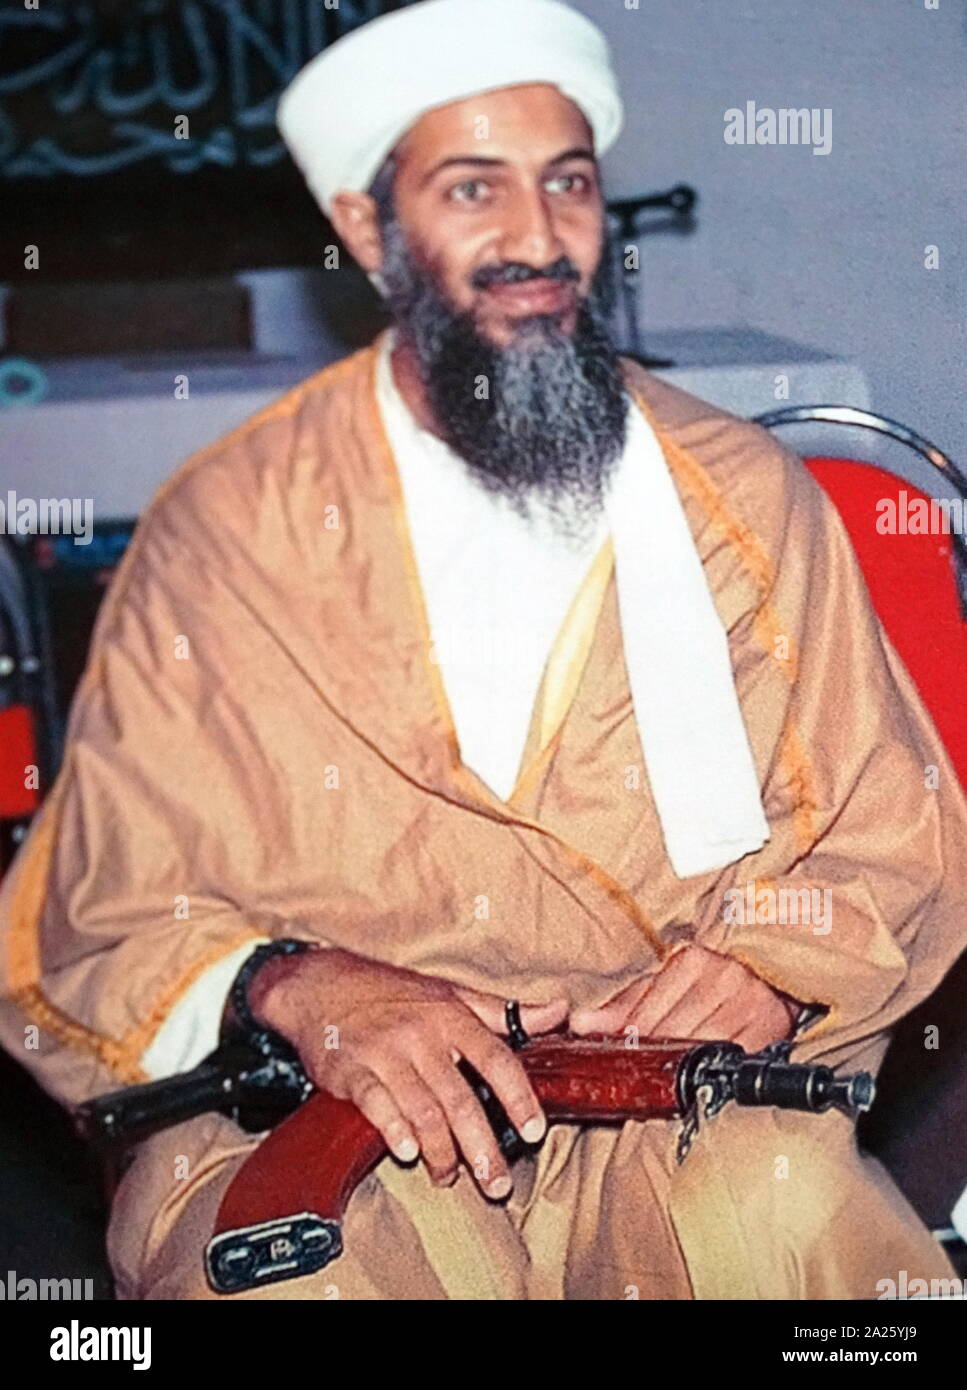 Osama bin laden -Fotos und -Bildmaterial in hoher Auflösung – Alamy